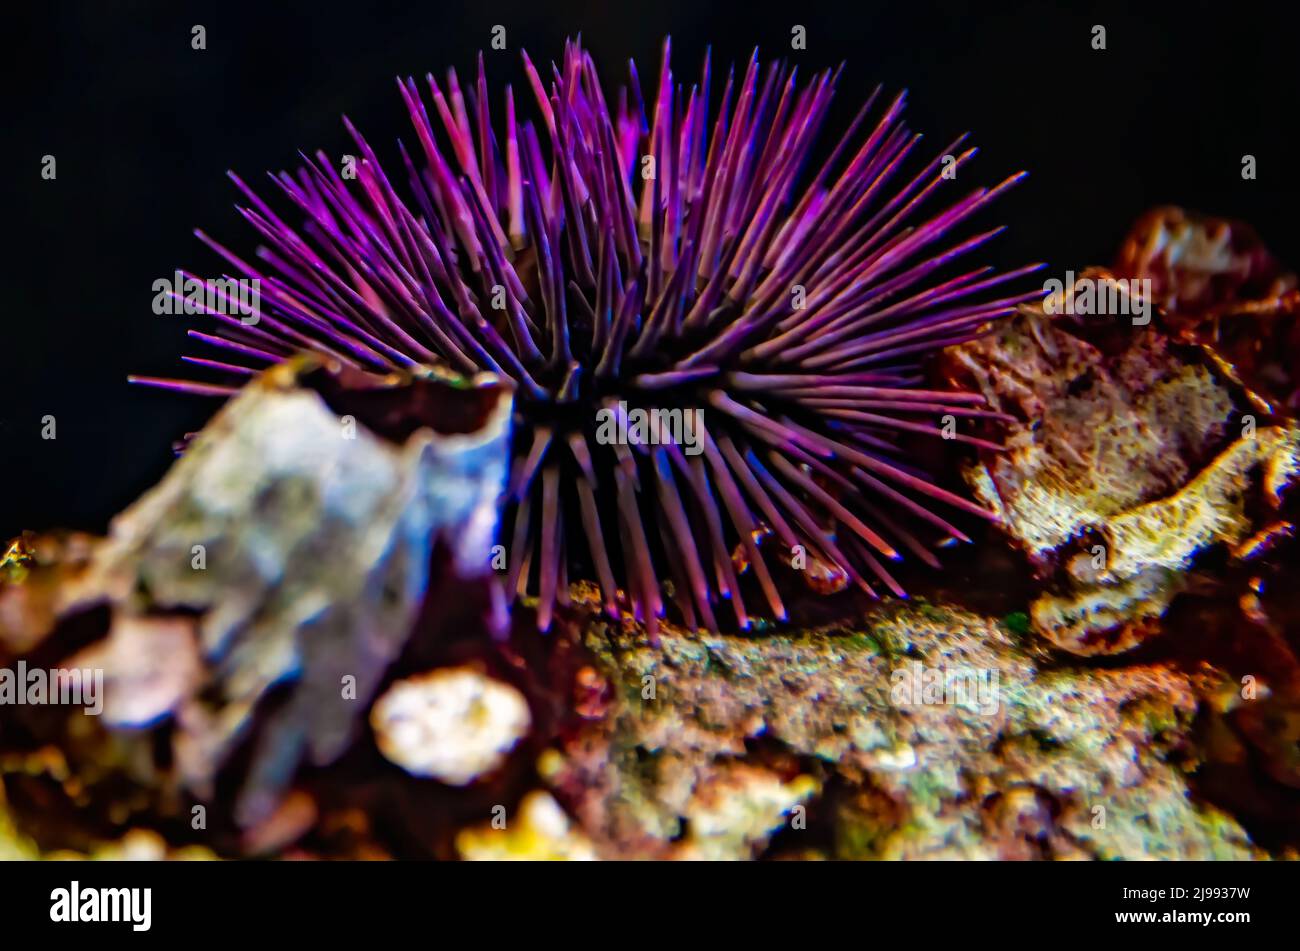 Ricci di mare in acquario Foto stock - Alamy